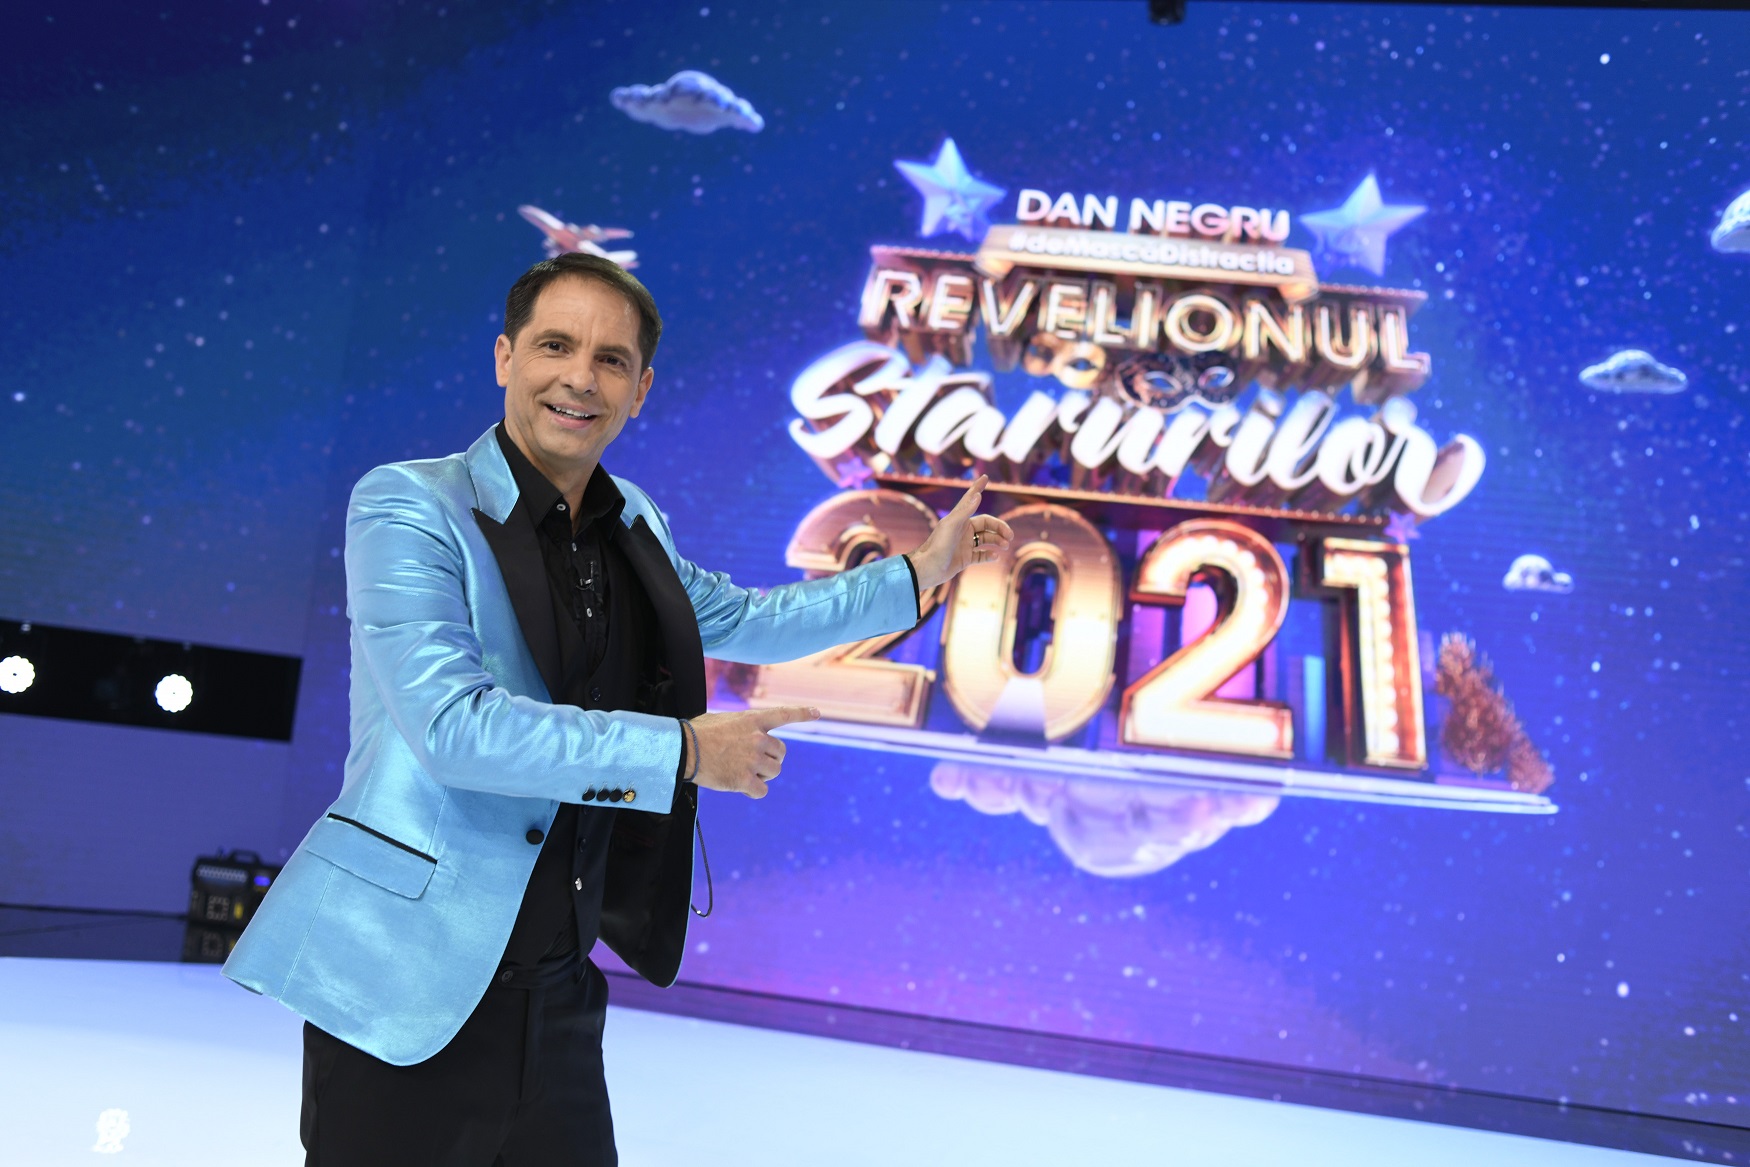 În noaptea de Revelion, de la 22:00, la Antena 1, Dan Negru #deMascăDistracția la Revelionul Starurilor 2021 – cel mai lung program de Revelion din istoria televiziunii din România